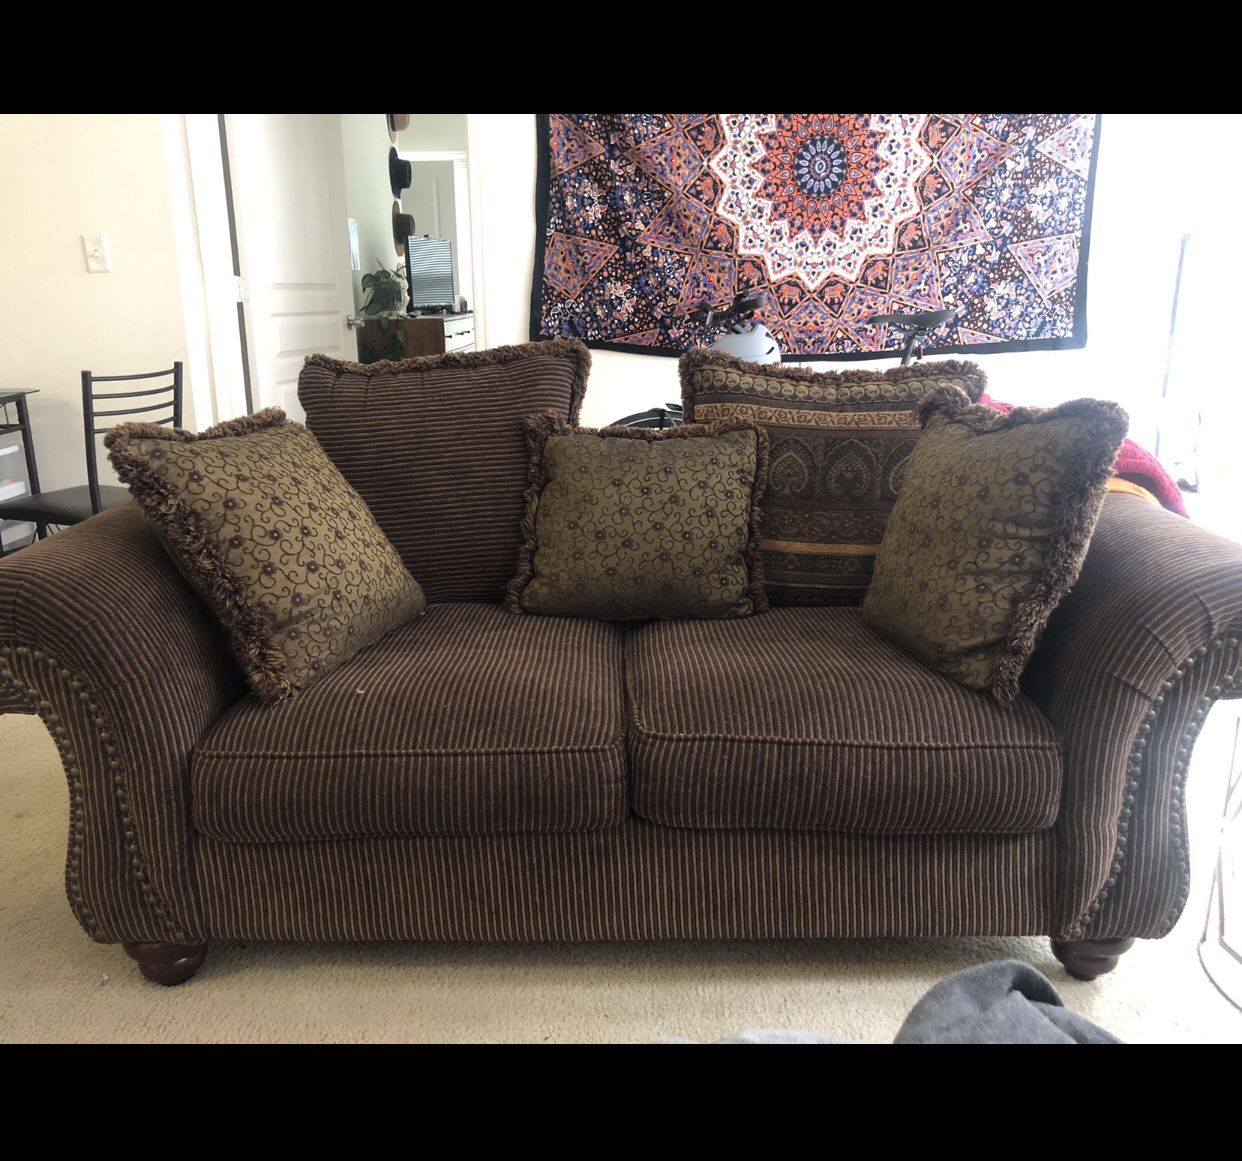 COMFIEST sofa, armchair, and ottoman